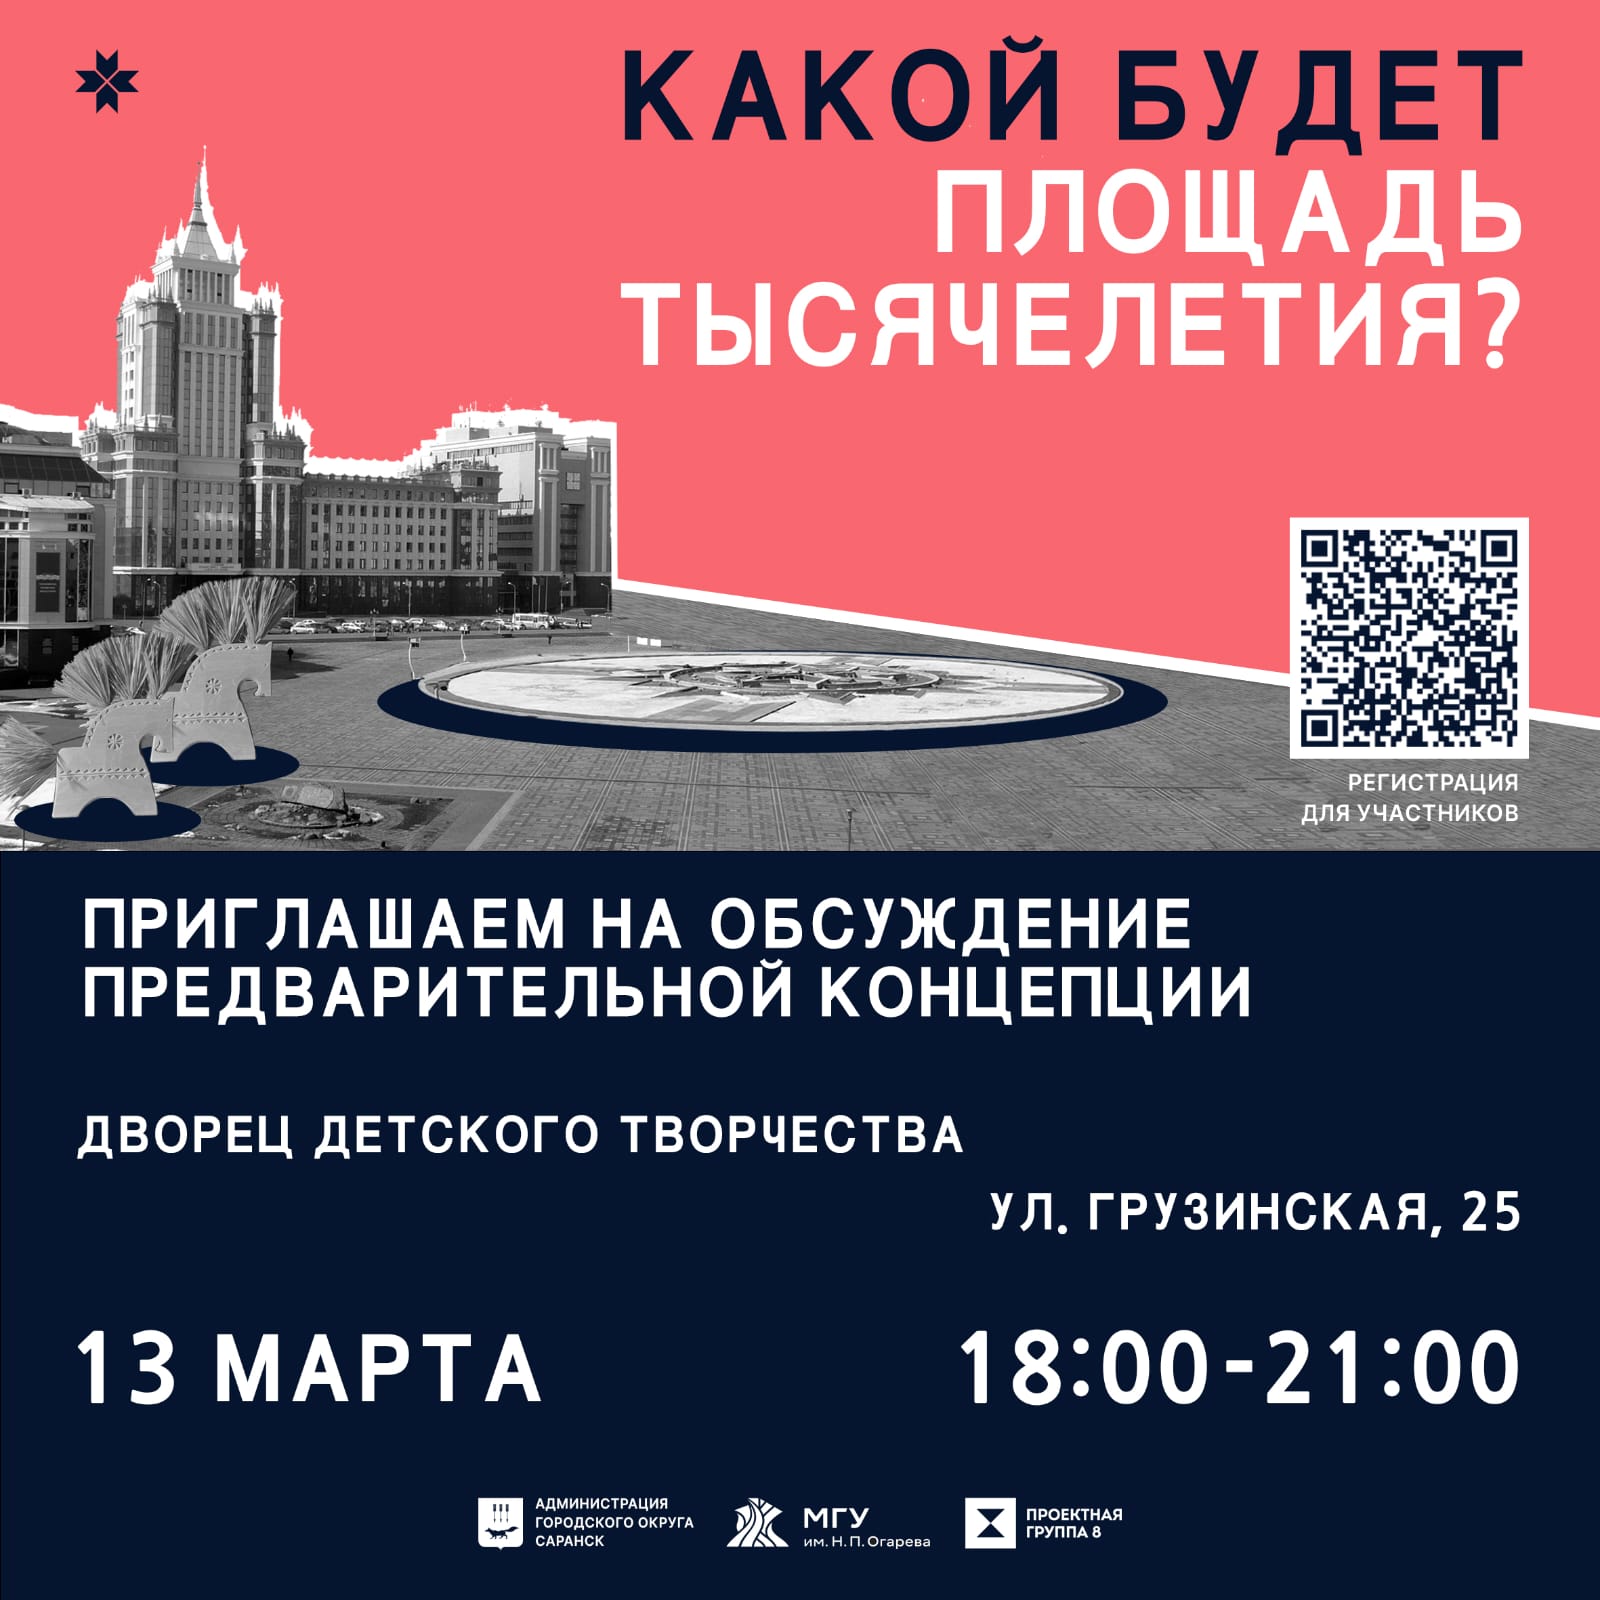 13 марта состоится обсуждение предварительной концепции развития Площади Тысячелетия